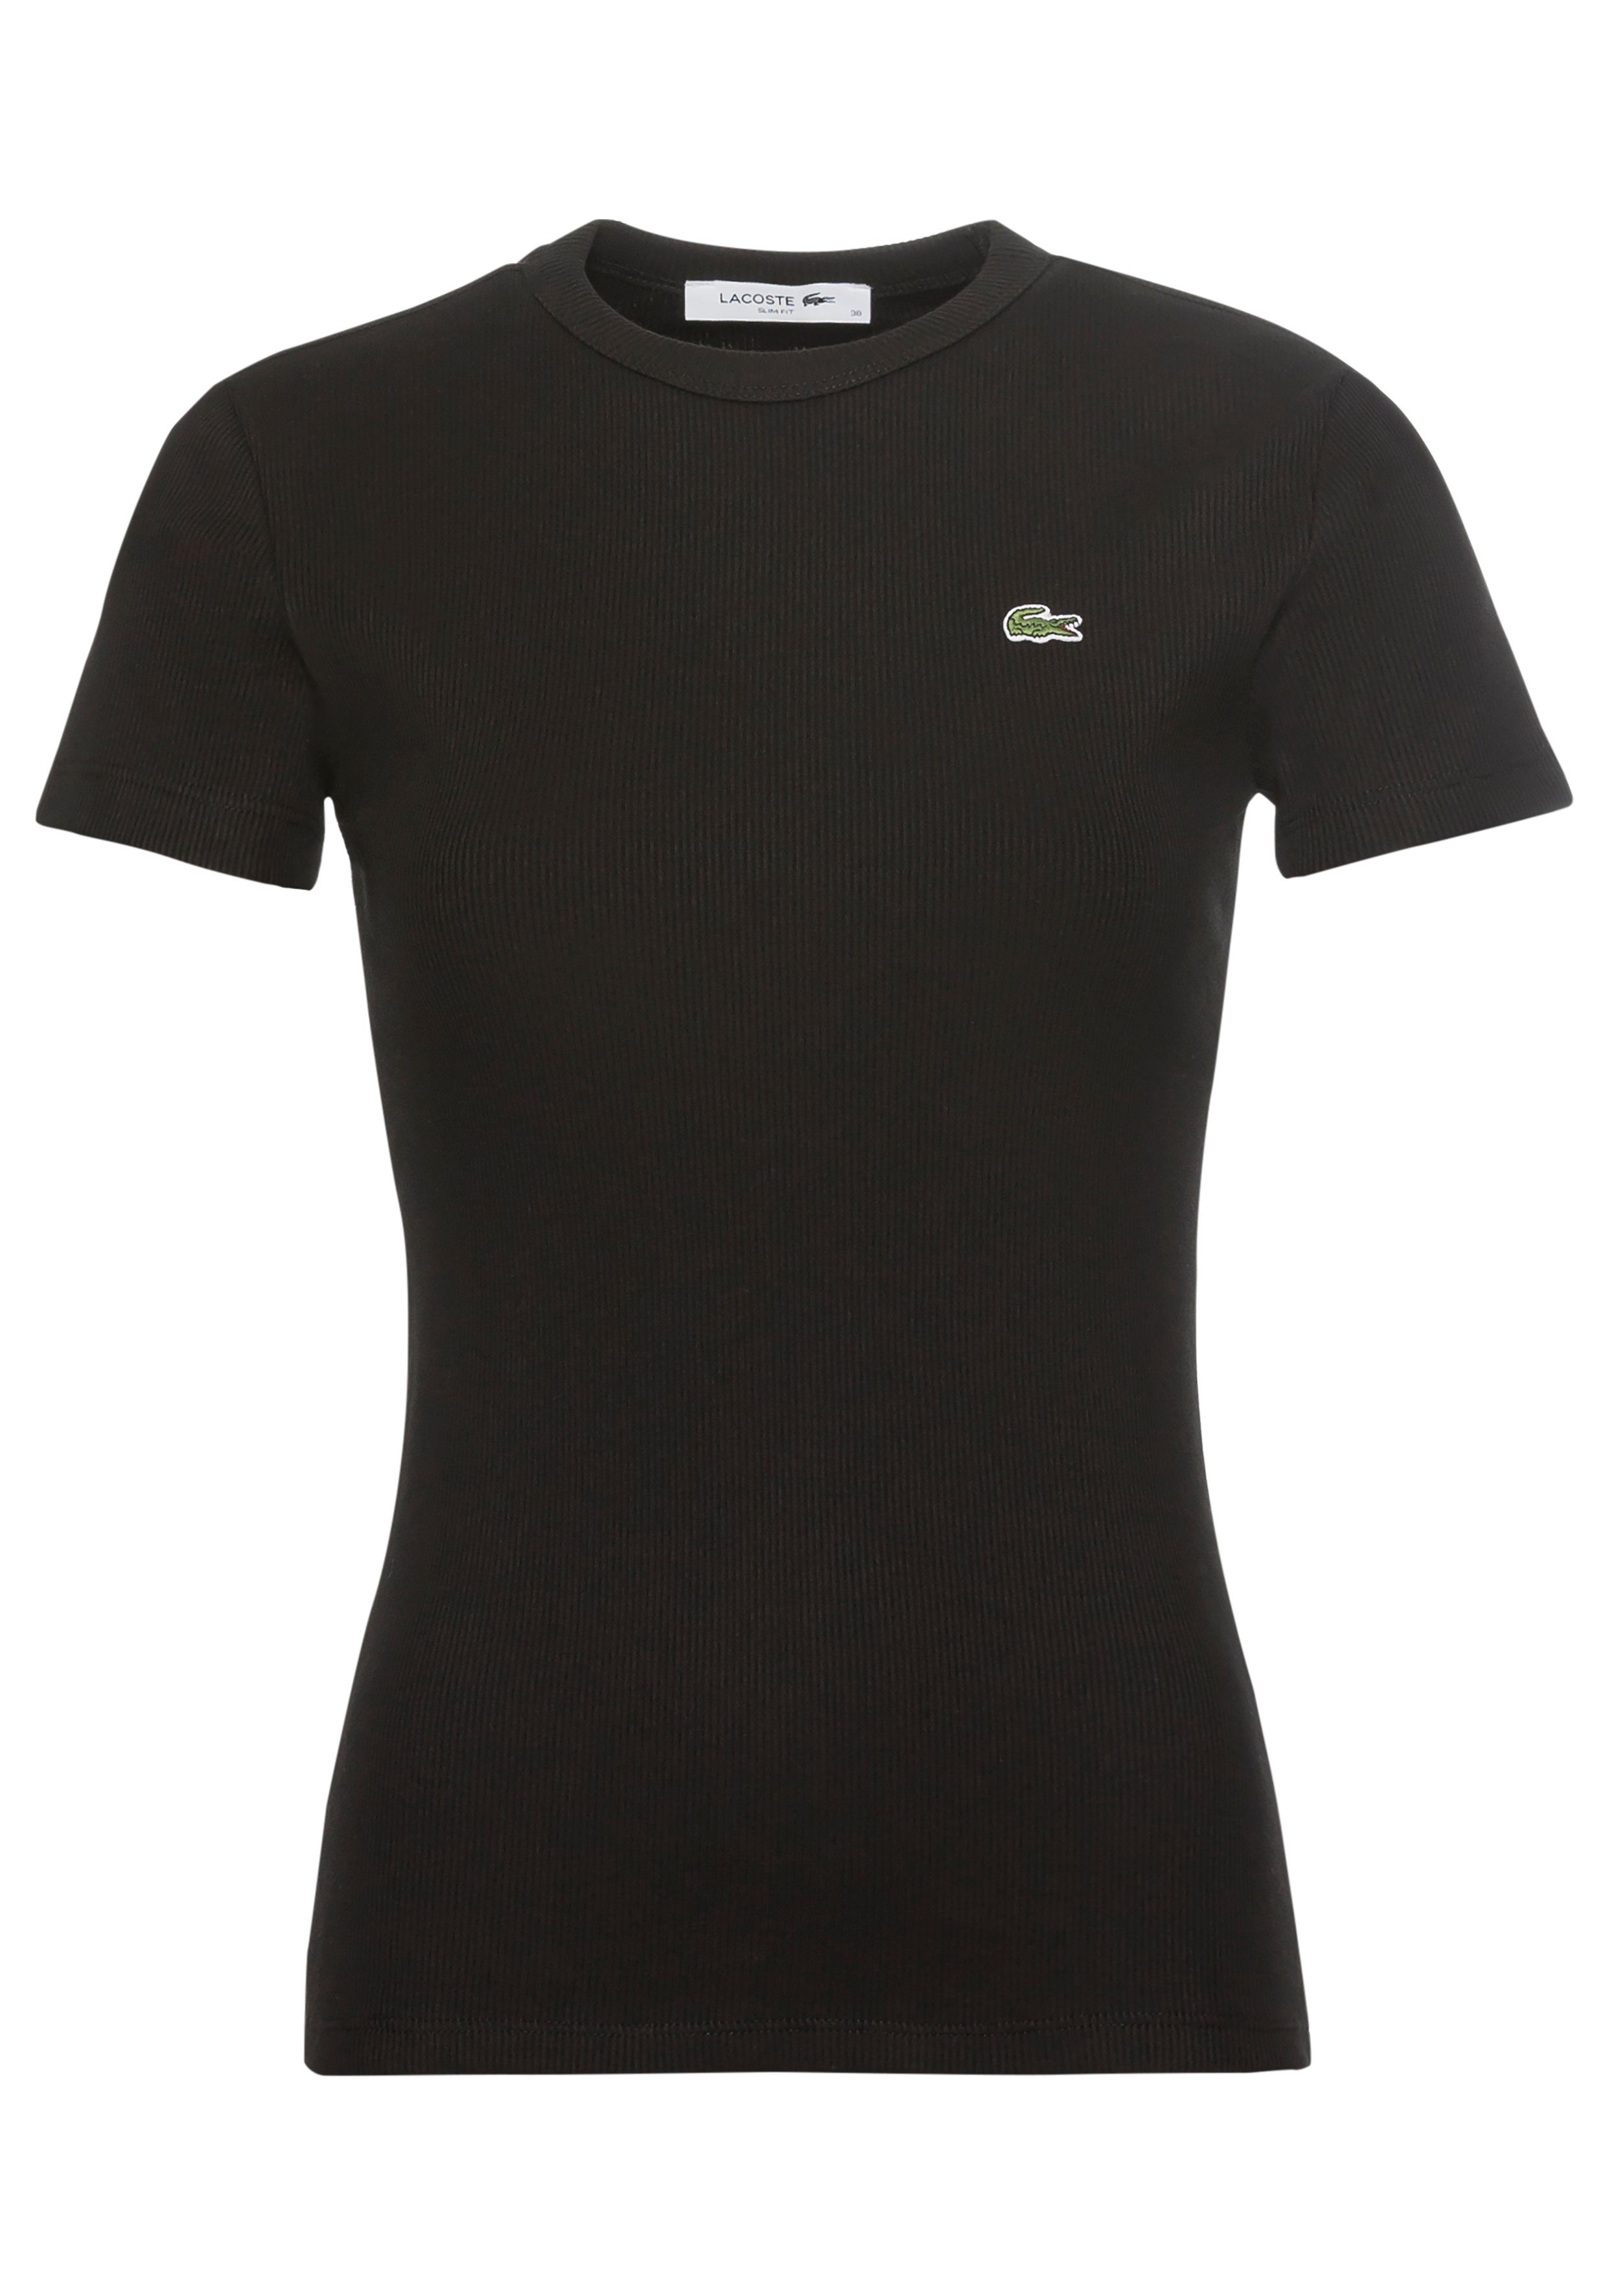 Lacoste T-Shirt Slim Fit Shirt aus Bio-Baumwolle schwarz